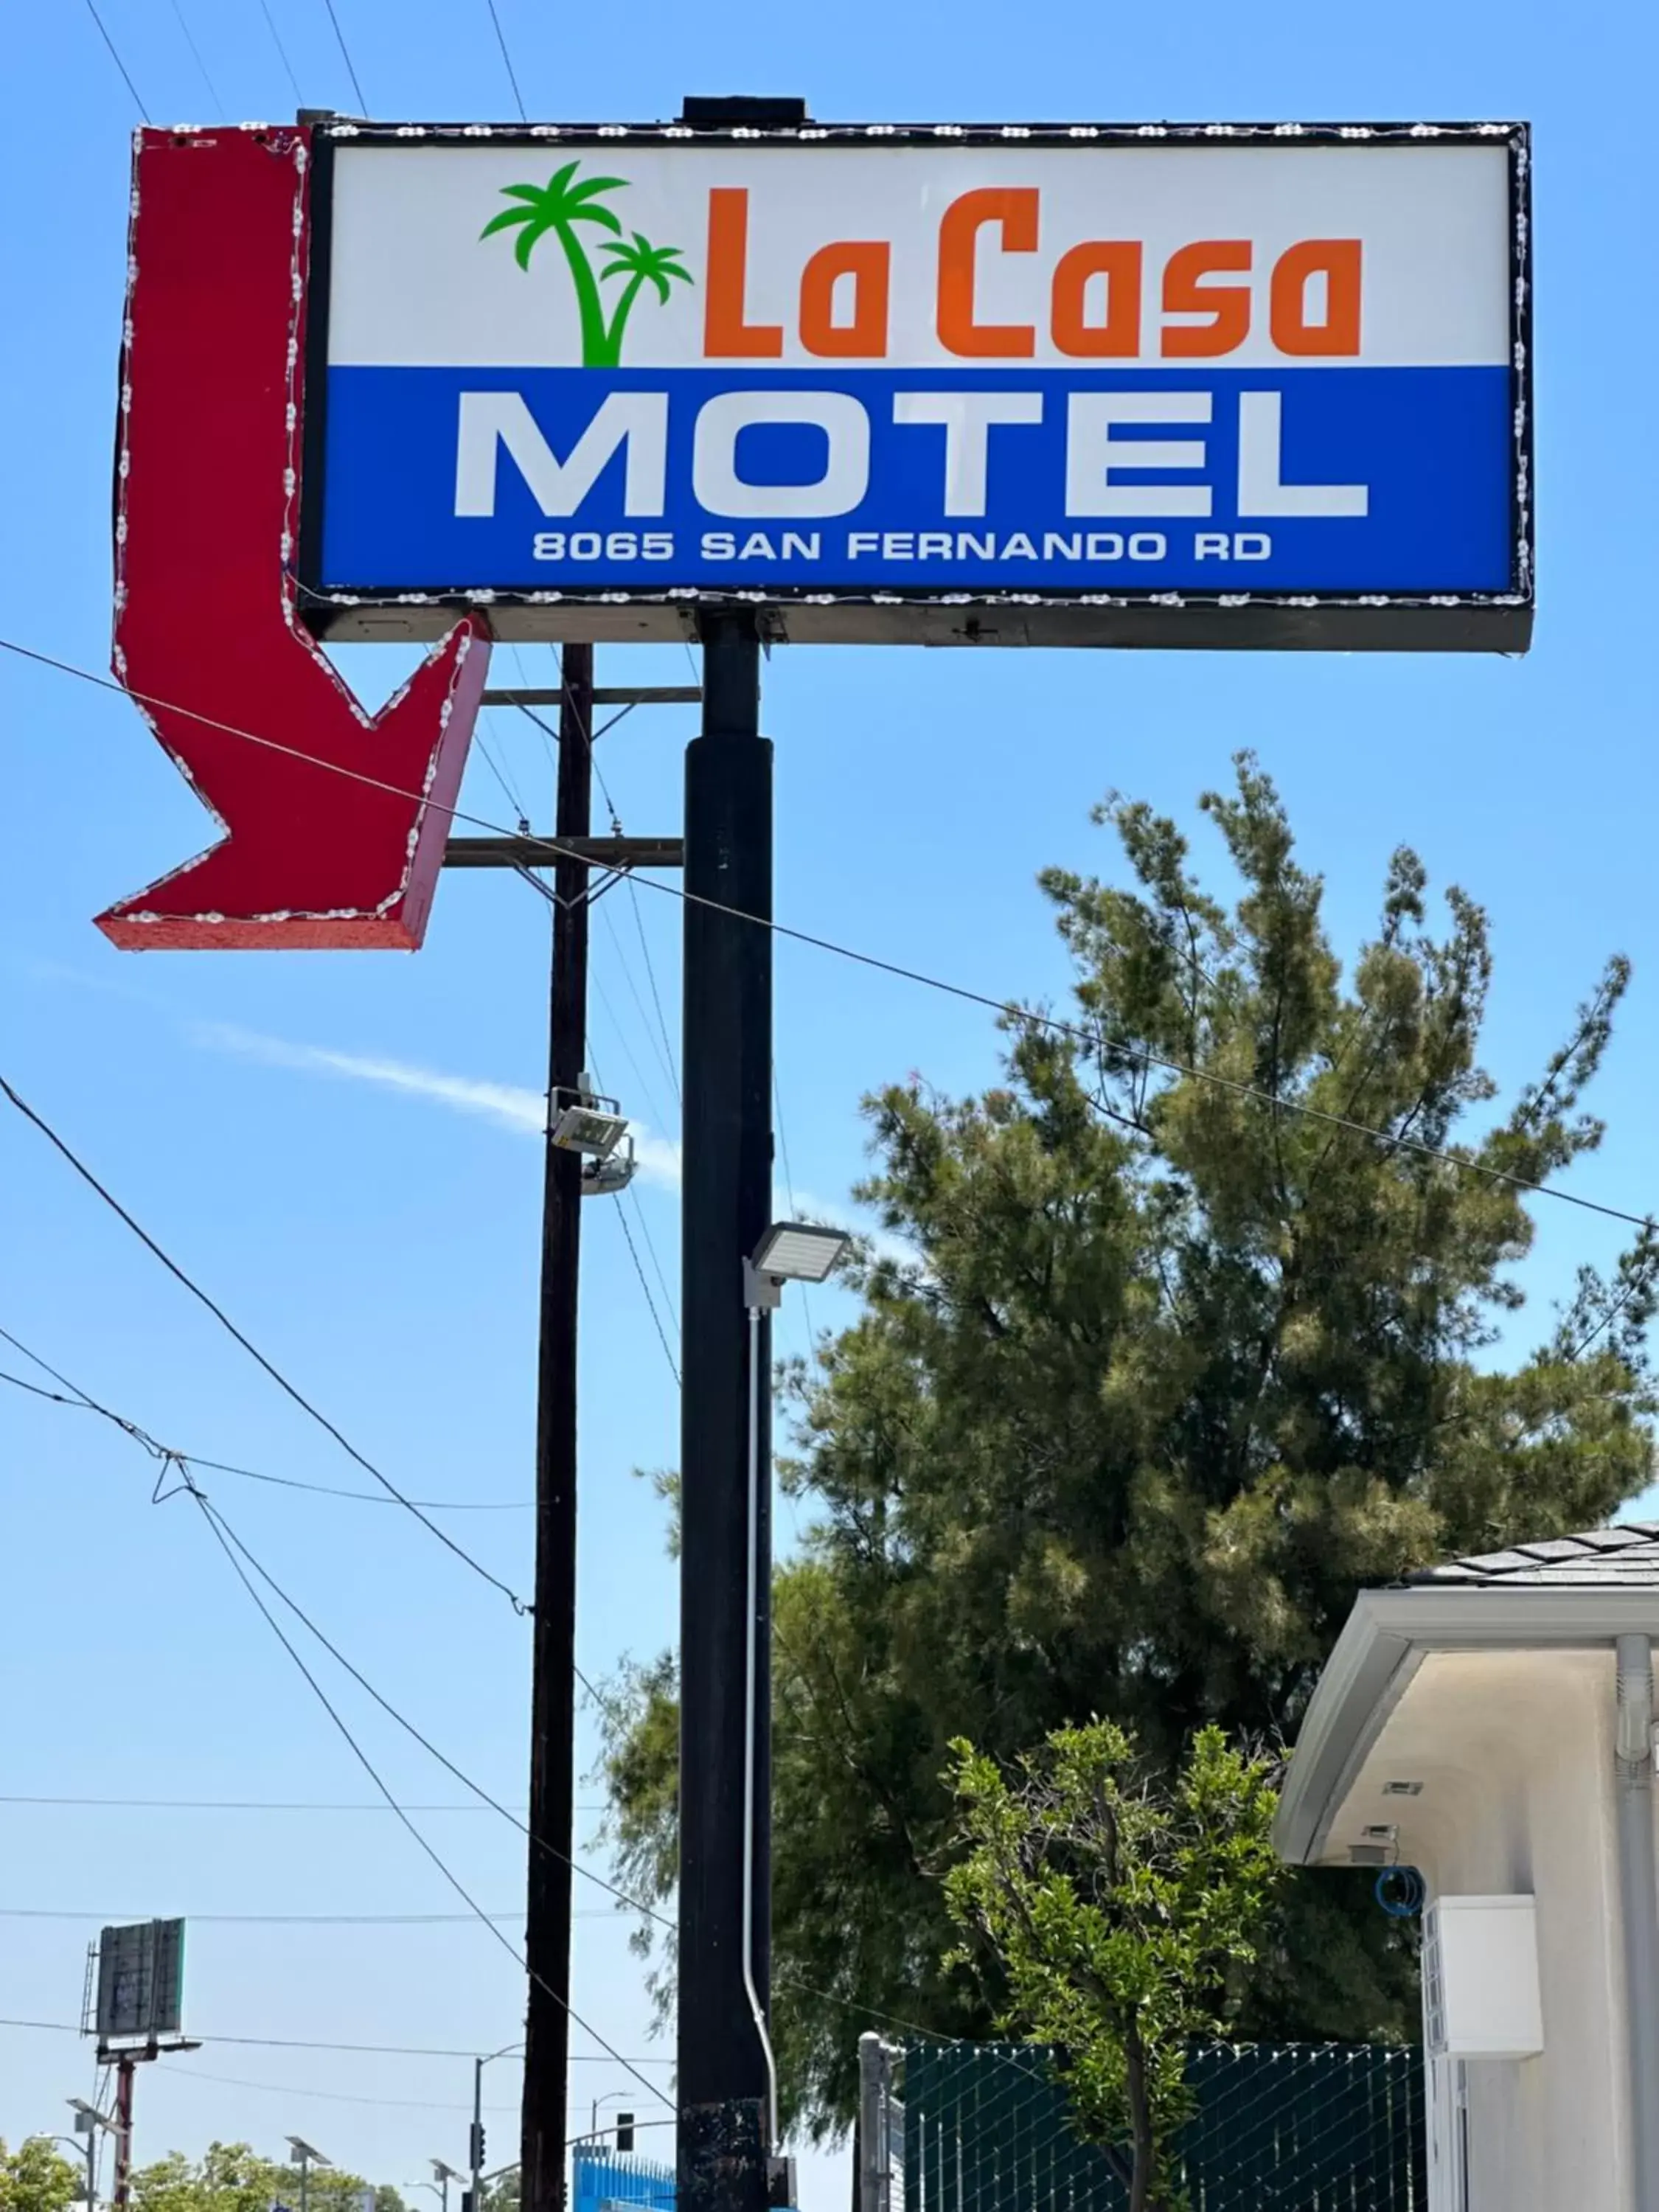 La Casa Motel, Los Angeles - Burbank Airport